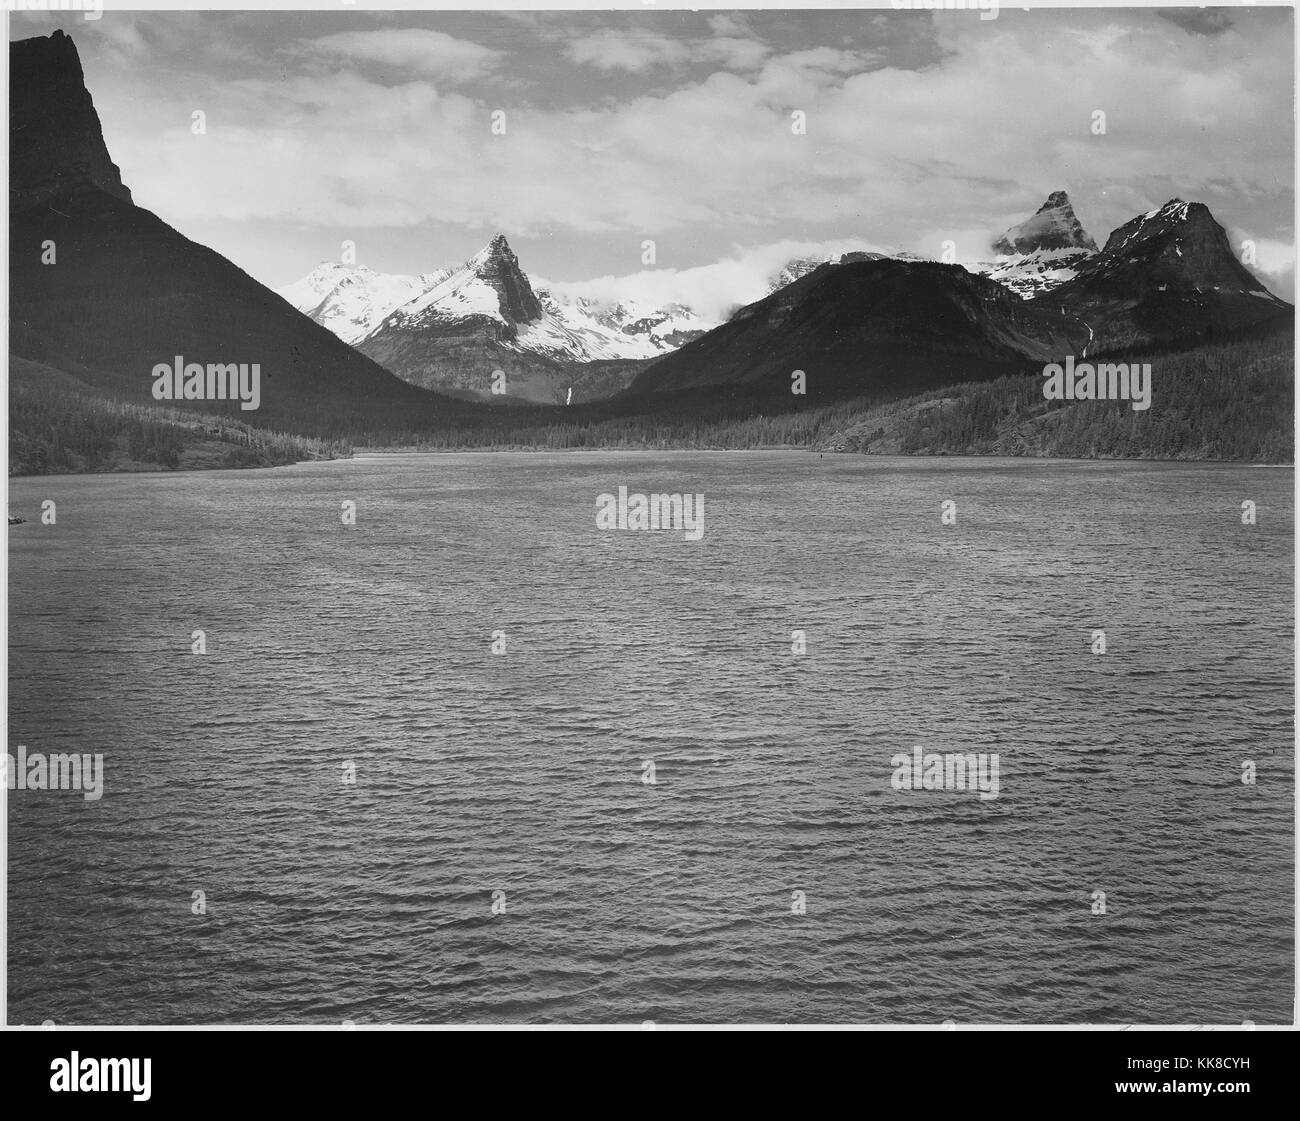 En regardant vers les montagnes enneigées, le lac en premier plan, 'St. Mary's Lake, Glacier National Park, Montana '. Ansel Adams Photographies des Parcs Nationaux et Monuments Historiques. L'image de courtoisie des Archives nationales, 1941. Banque D'Images